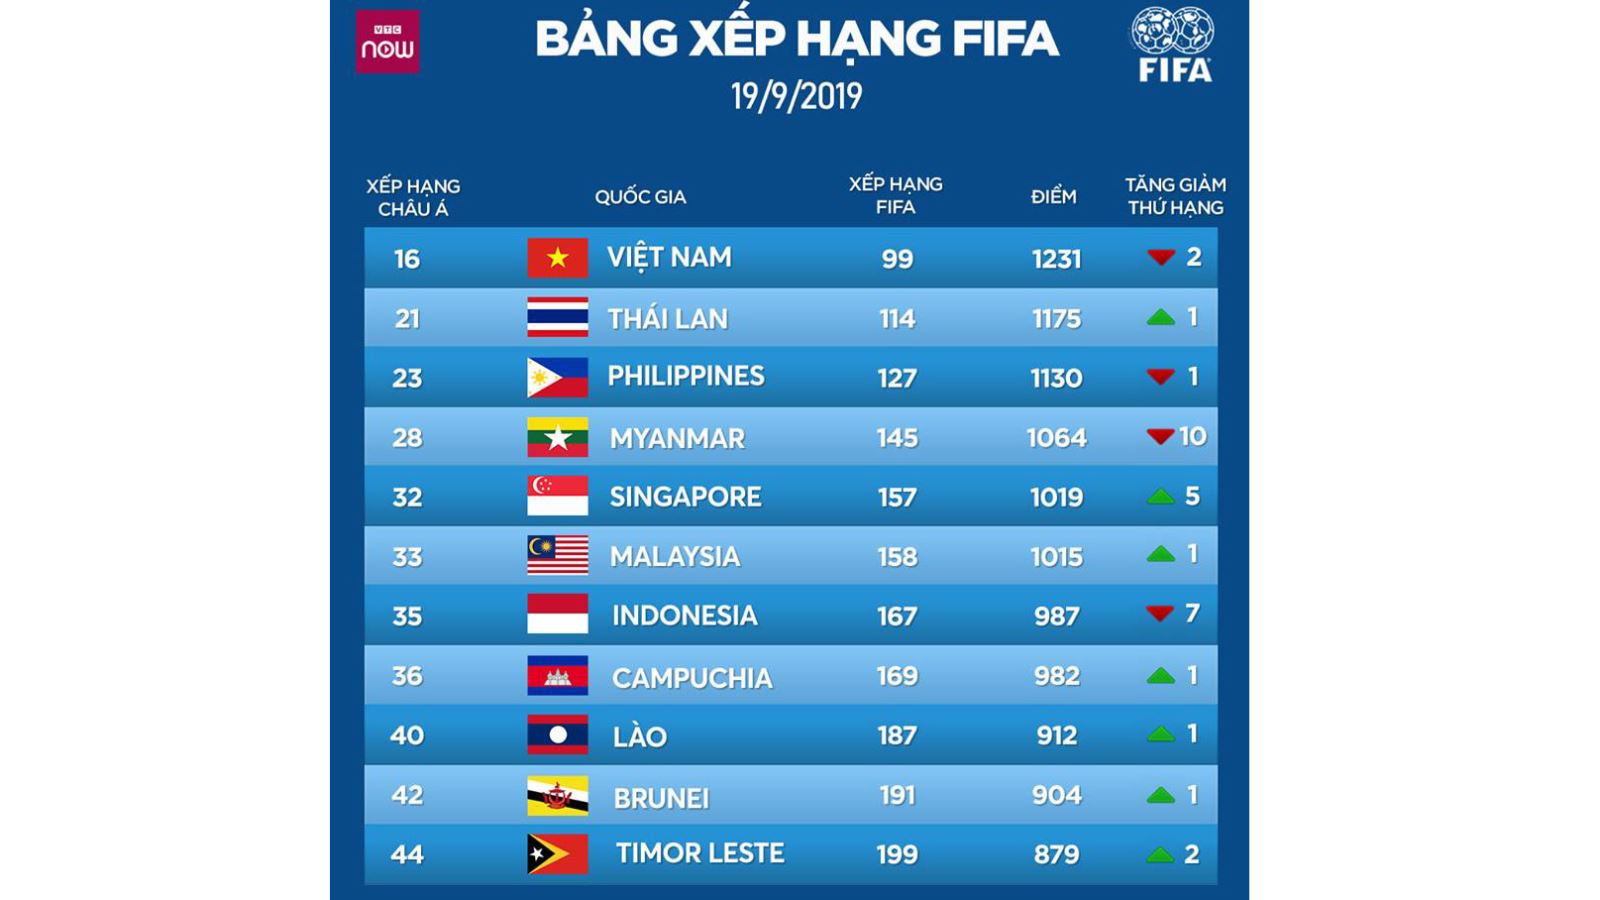 BXH FIFA, tuyển việt nam, việt nam, thái lan, Bỉ, bảng xếp hạng FIFA, bóng đá, bong da, ket qua bong da, vòng loại world cup